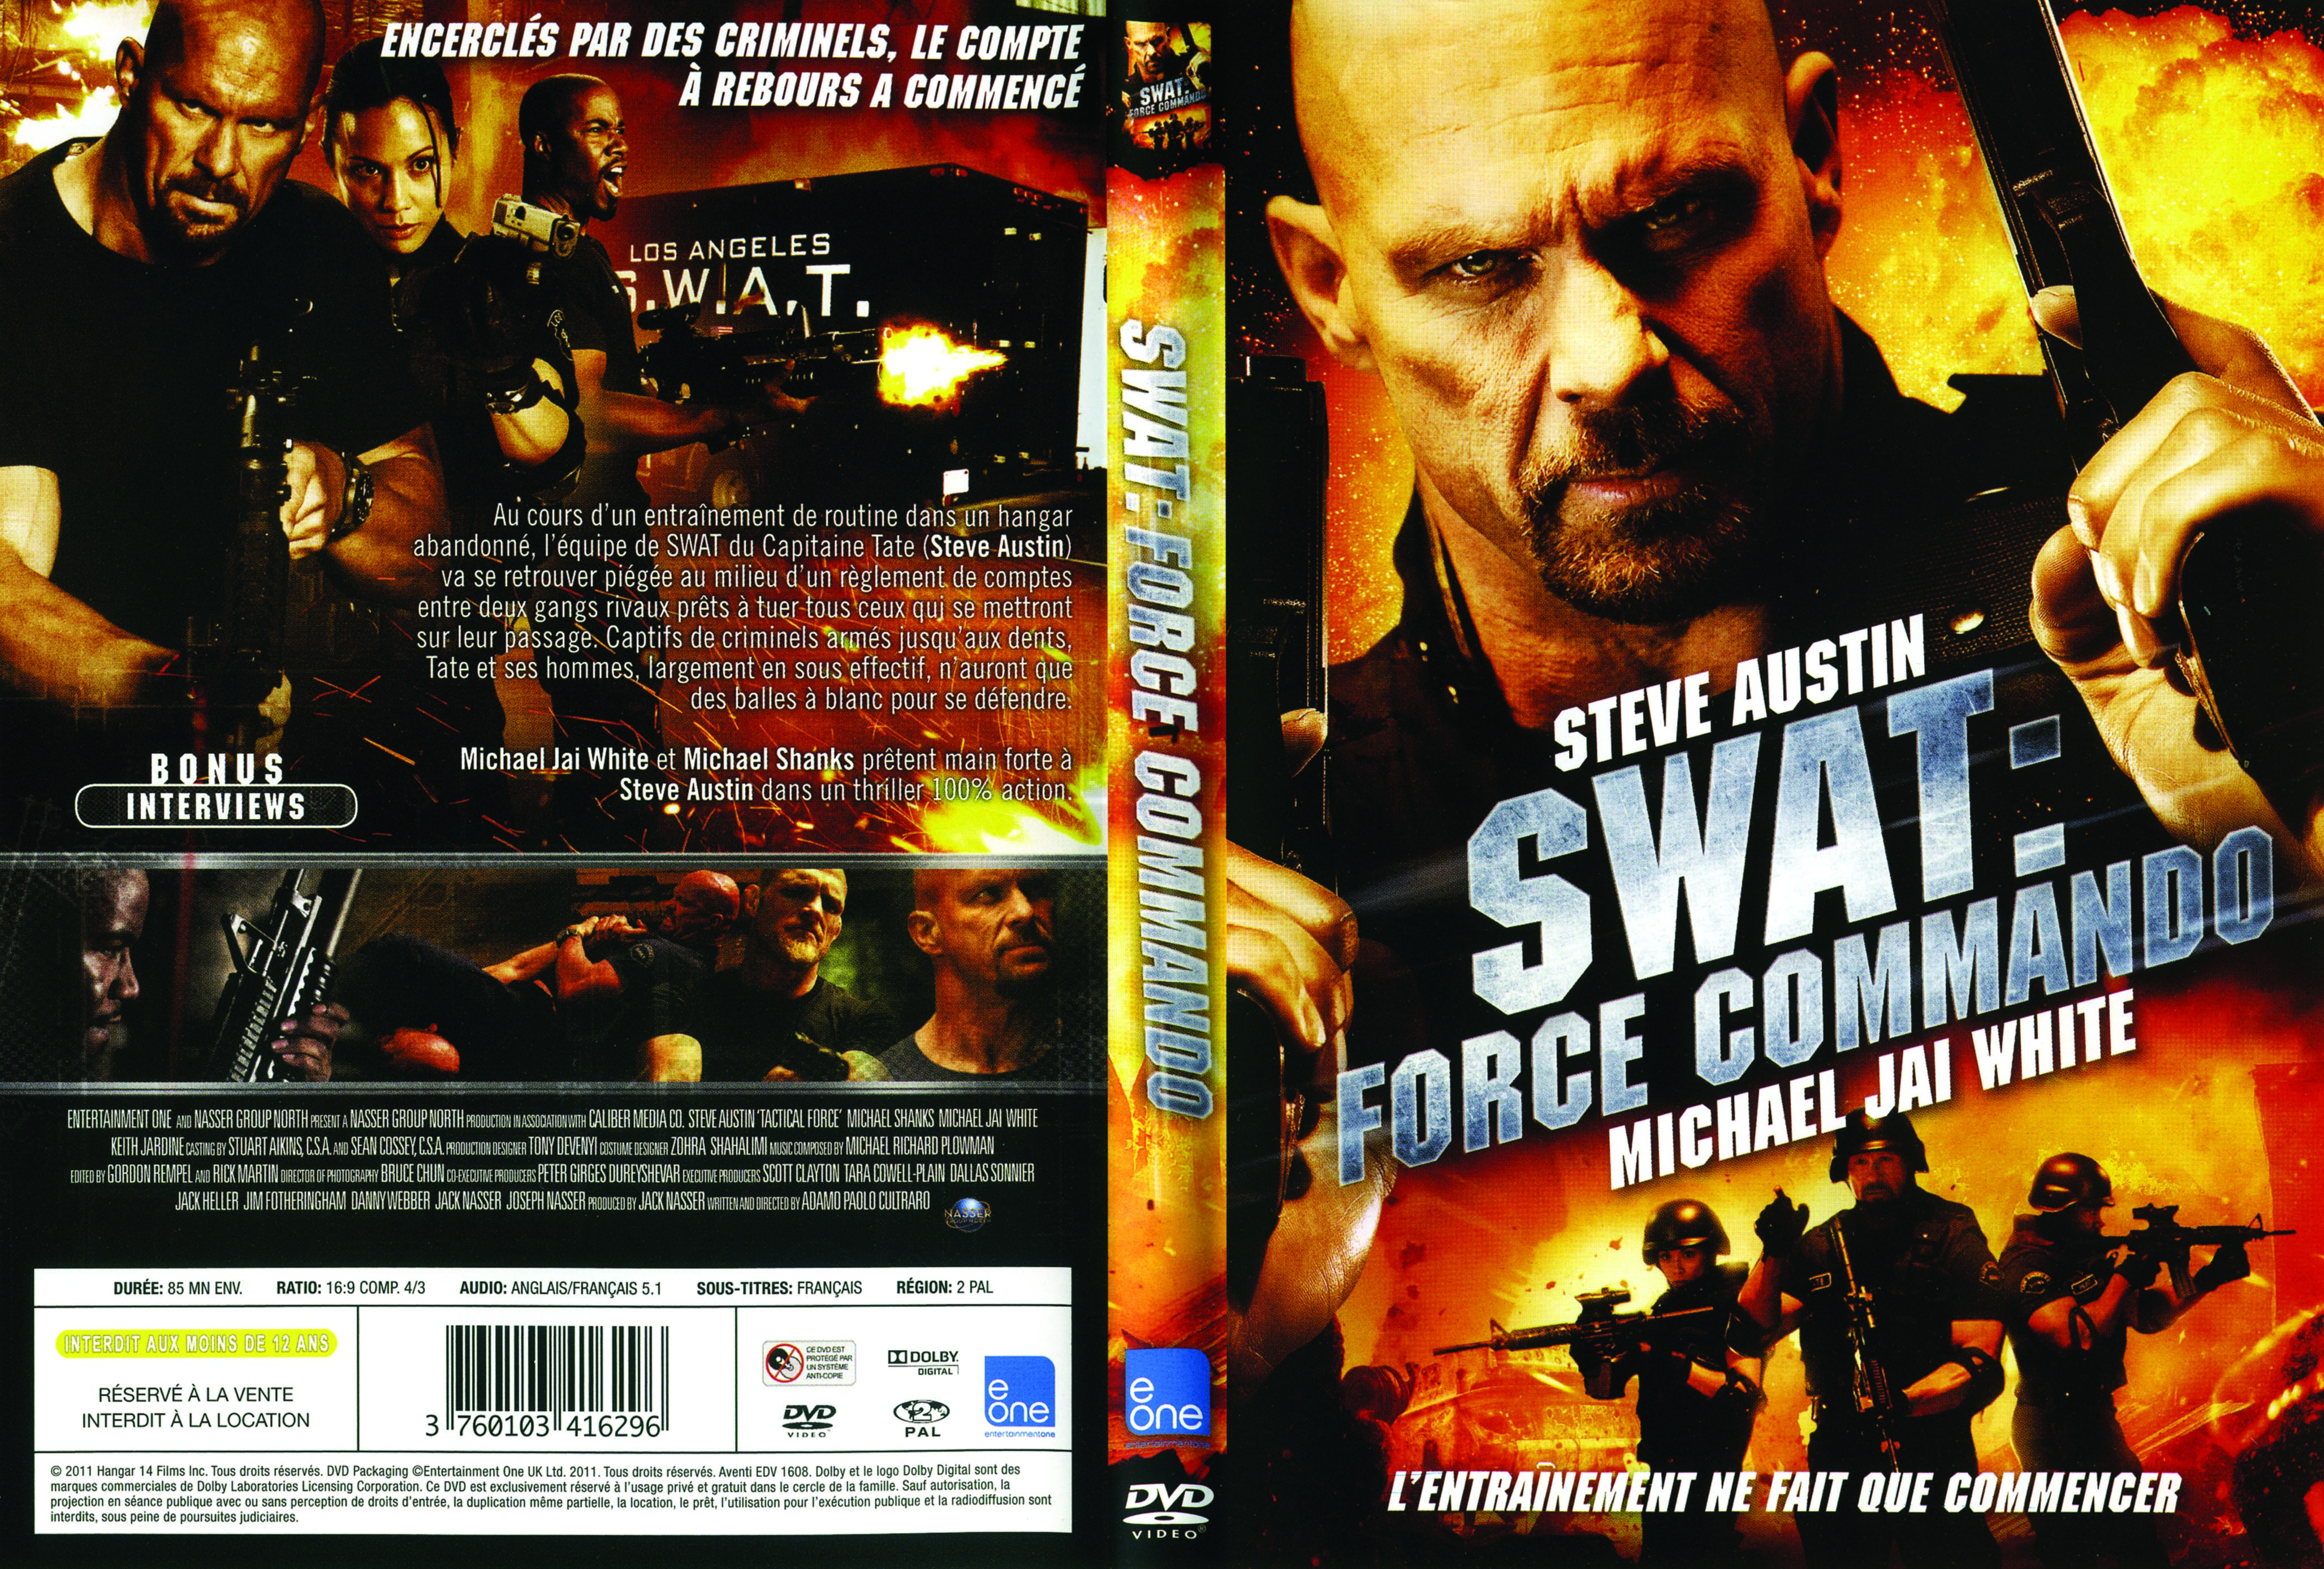 Jaquette DVD Swat force commando